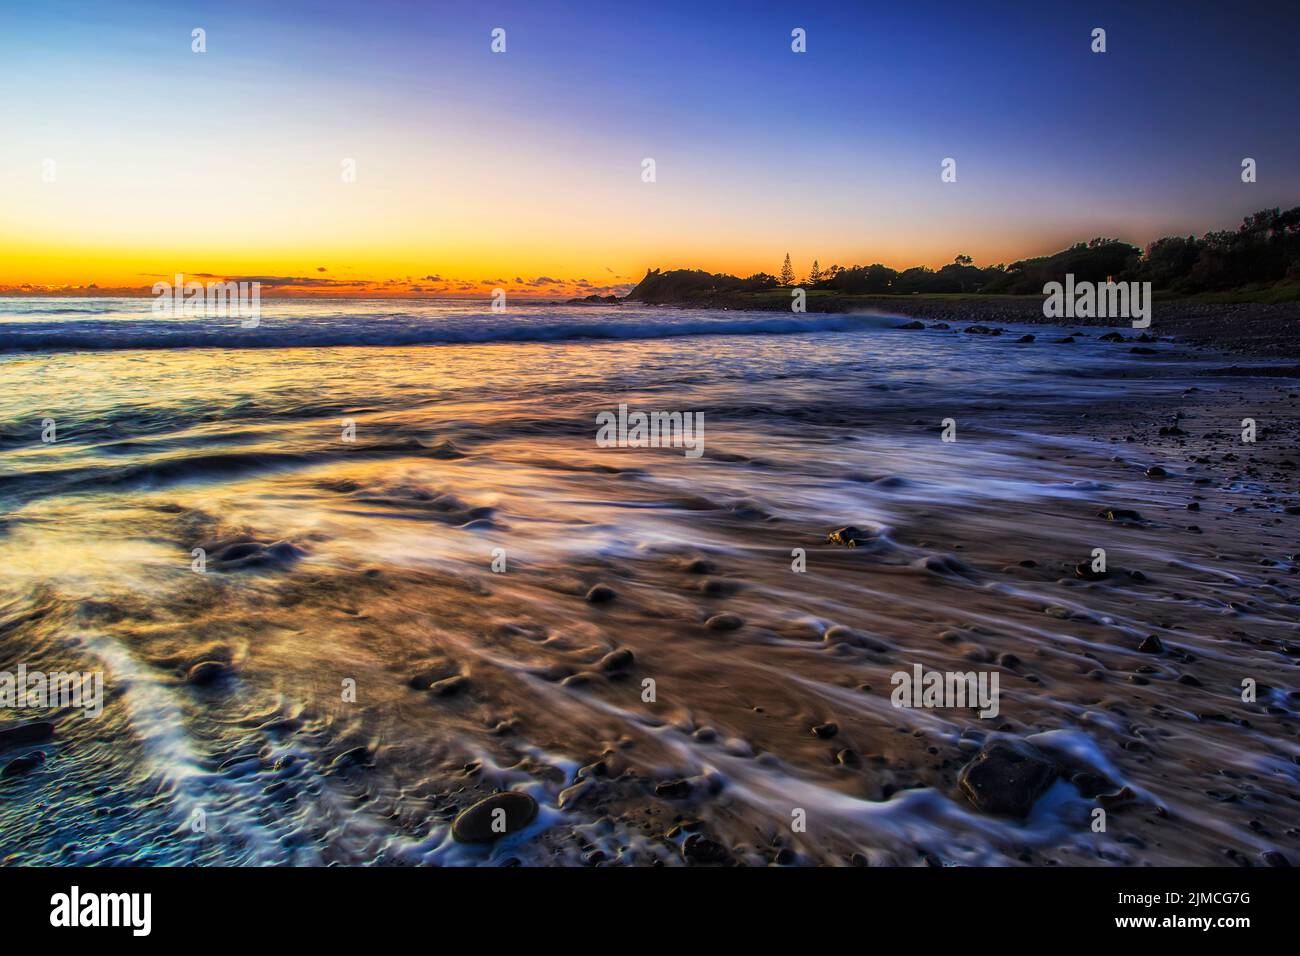 Plage de galets sur la côte Pacifique de la ville de Forster en Australie au lever du soleil - paysage marin pittoresque. Banque D'Images